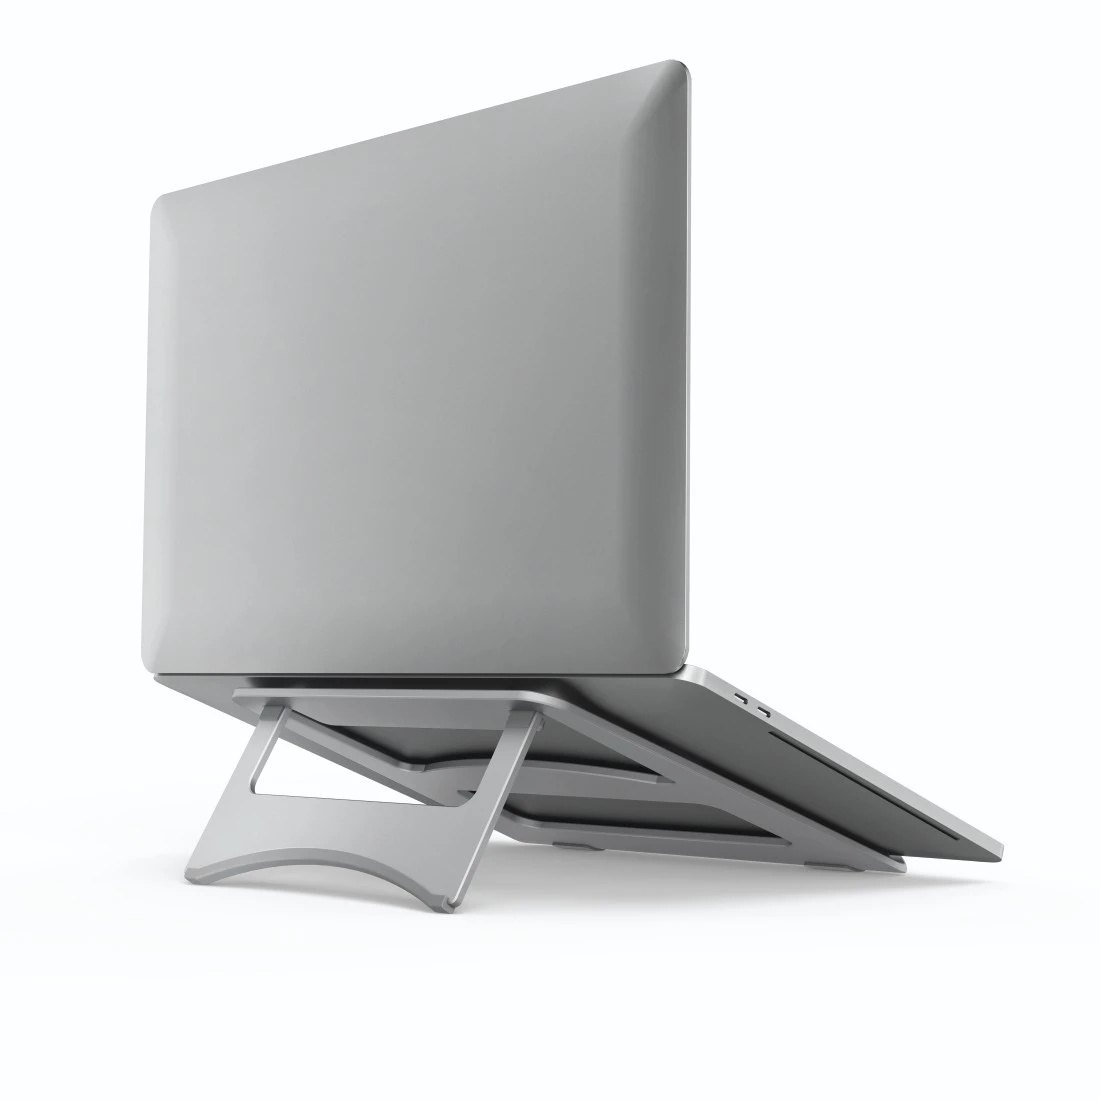 Support pr ordinateur portable Aluminium, jsq. 40cm (15,6